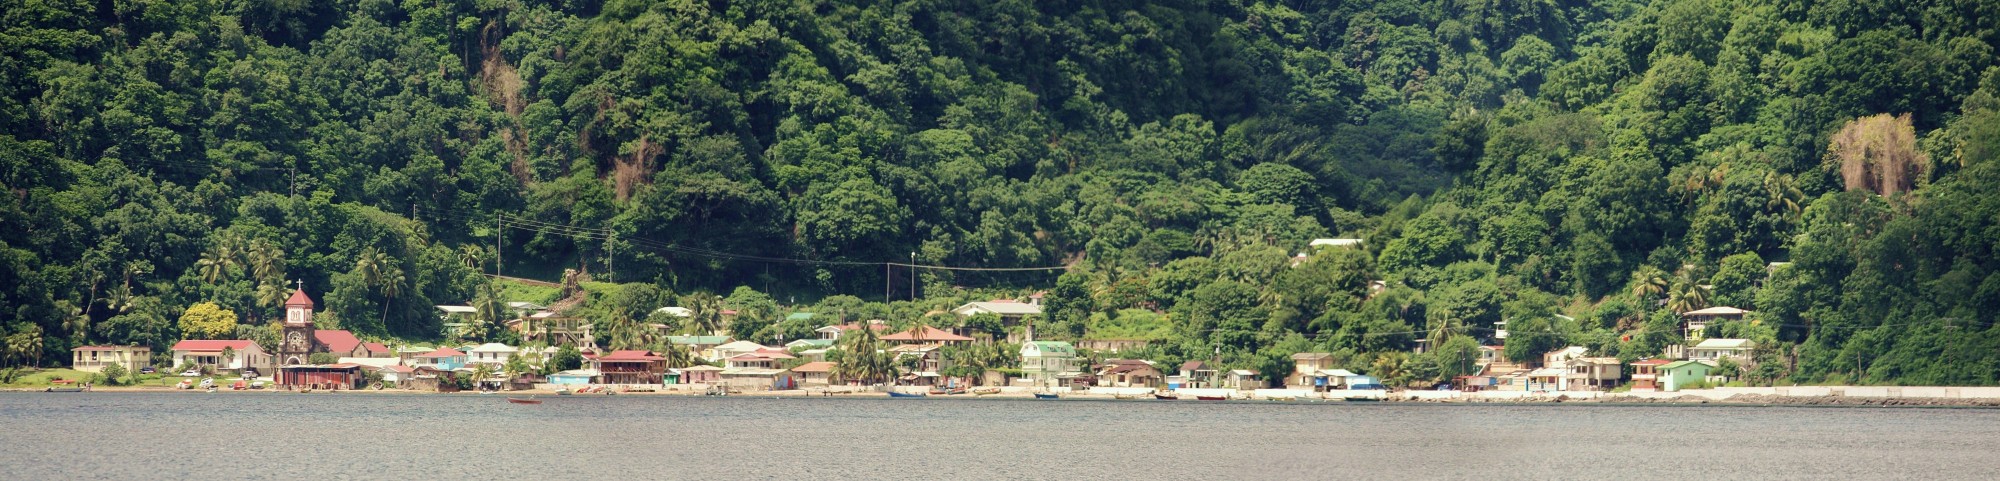 Soufrière Bay, Dominica 009